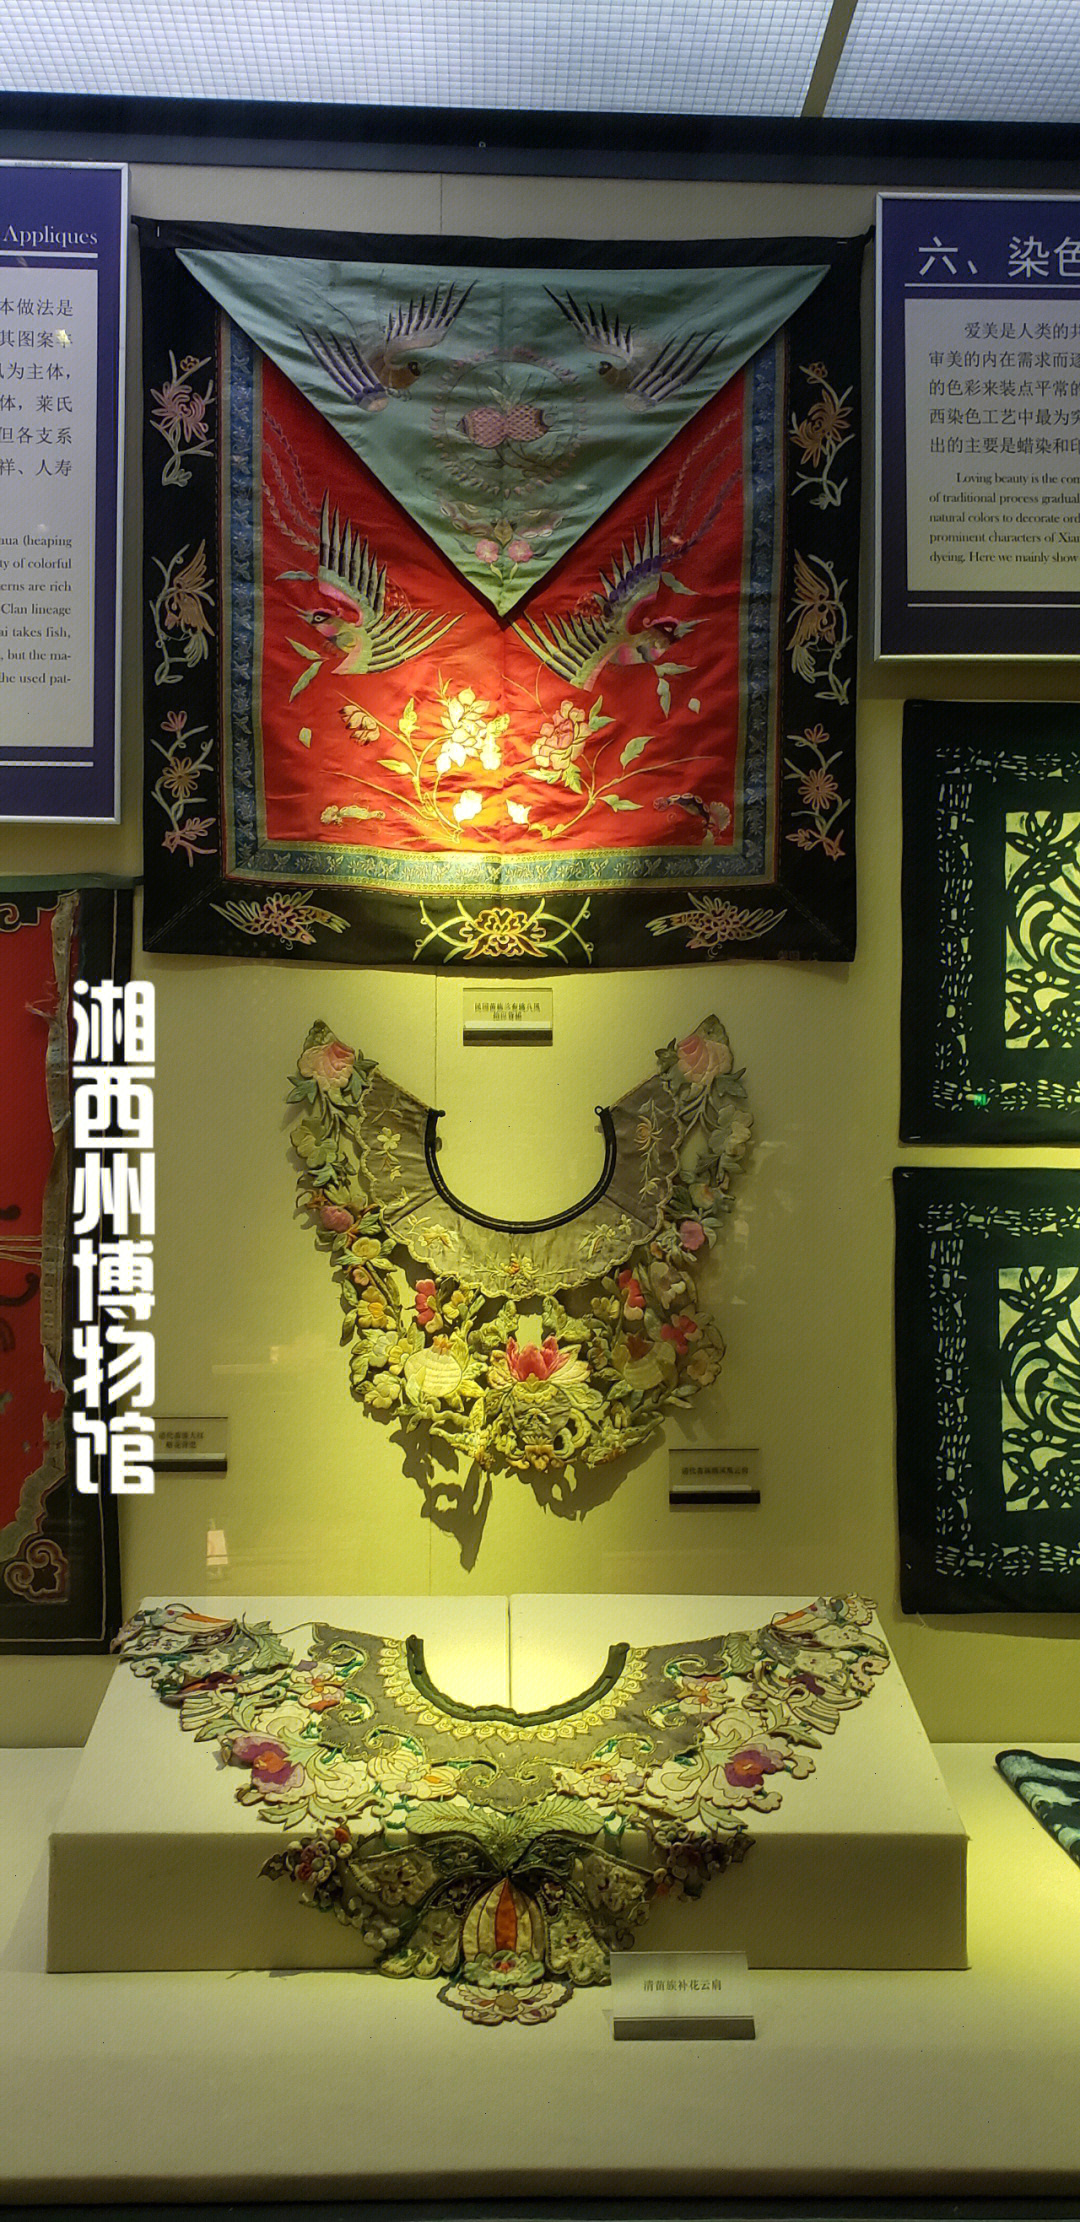 旅行日记3湘西小众景点湘西州博物馆